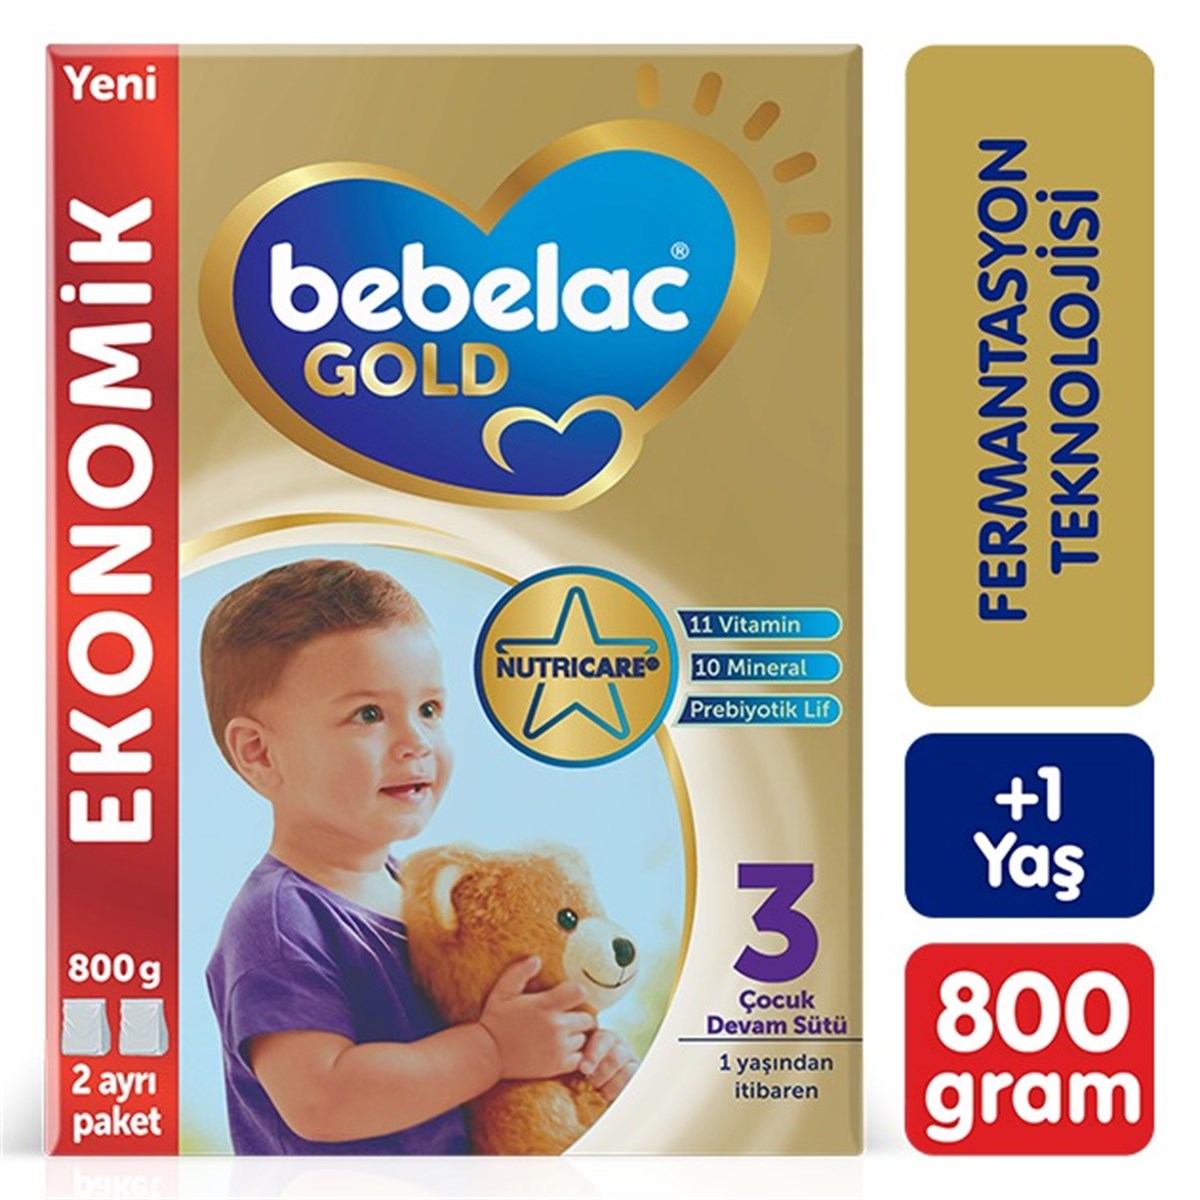 Bebelac Gold 3 Çocuk Devam Sütü 800g 1 Yaş+ - Minimoda